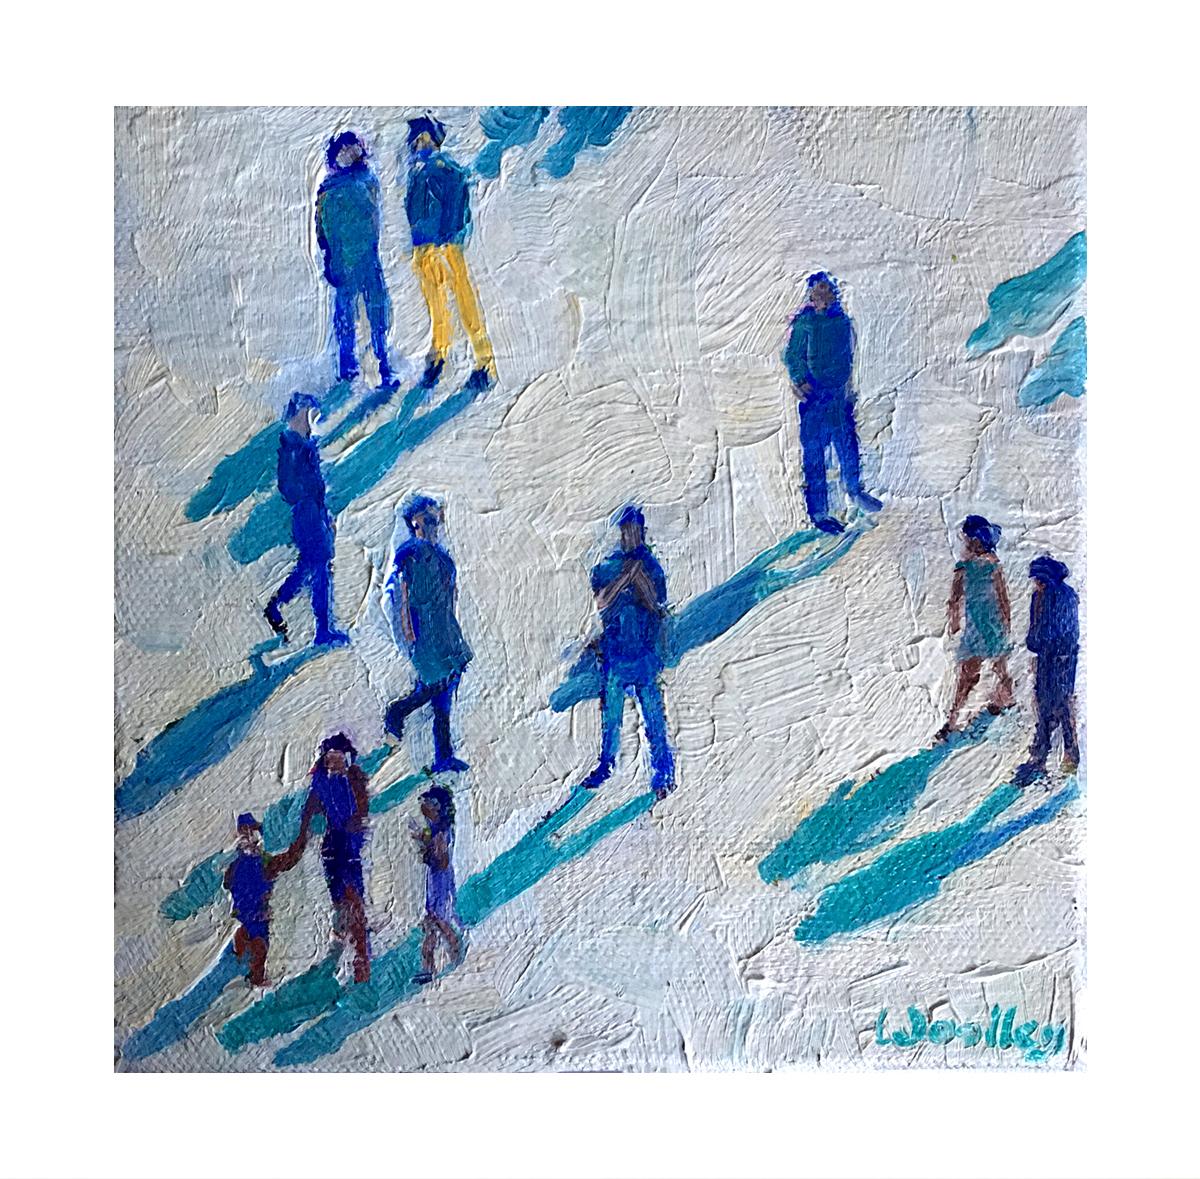 Blue Shadows est une peinture originale d'Eleanor Woolley. Blue Shadows fait partie d'une série de peintures d'ombres qui s'intéressent à la lumière, à l'ombre et aux ombres. L'artiste explore la relation entre les personnes et leur environnement.